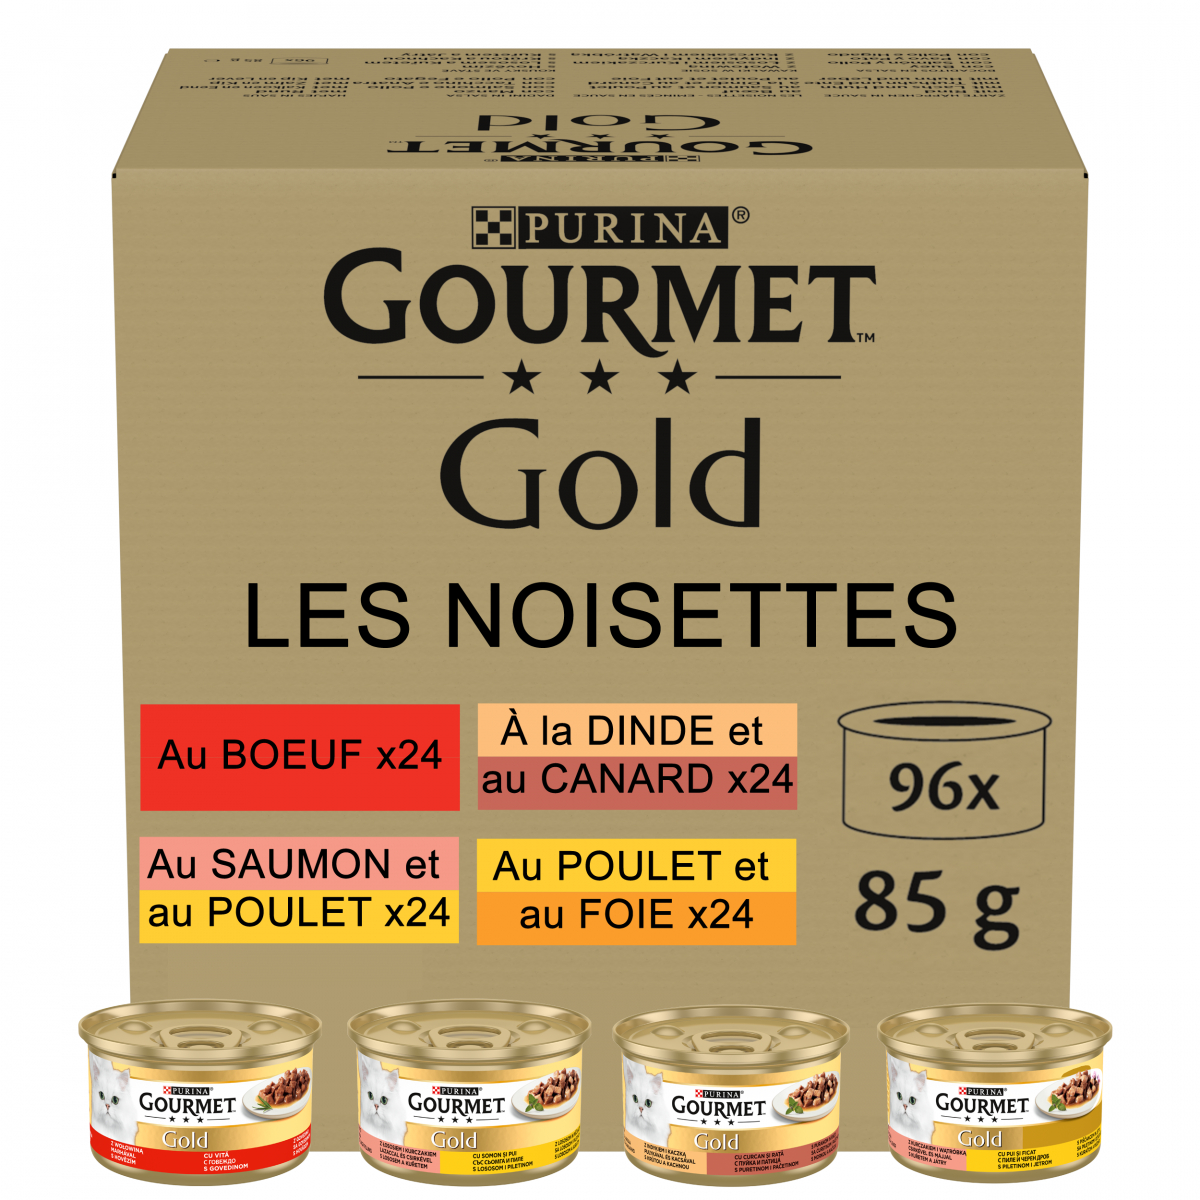 GOURMET GOLD Les Mousselines 4 variétés pour chat adulte 4x85g